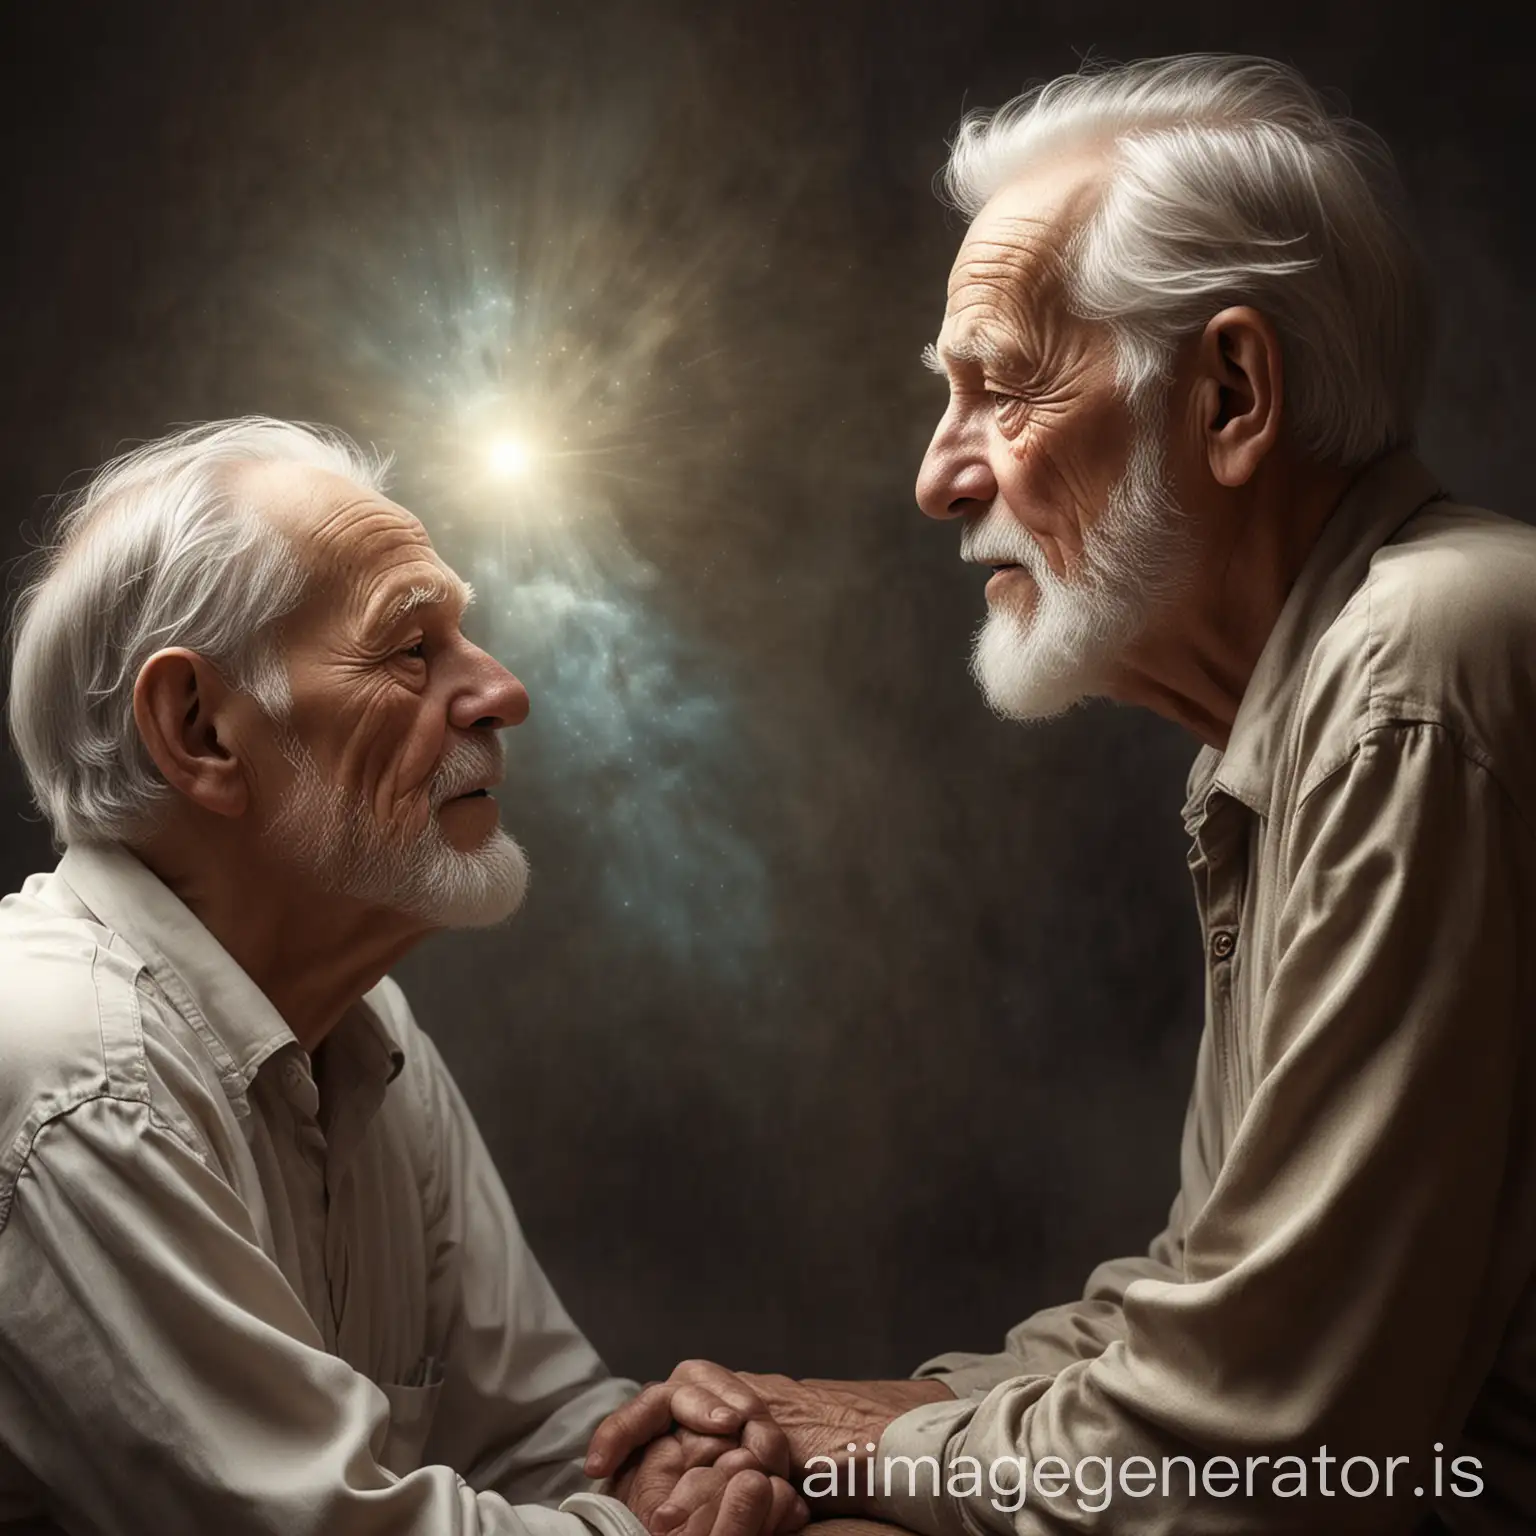 Dream-Enlightens-an-Elder-A-Wise-Conversation-Illuminated